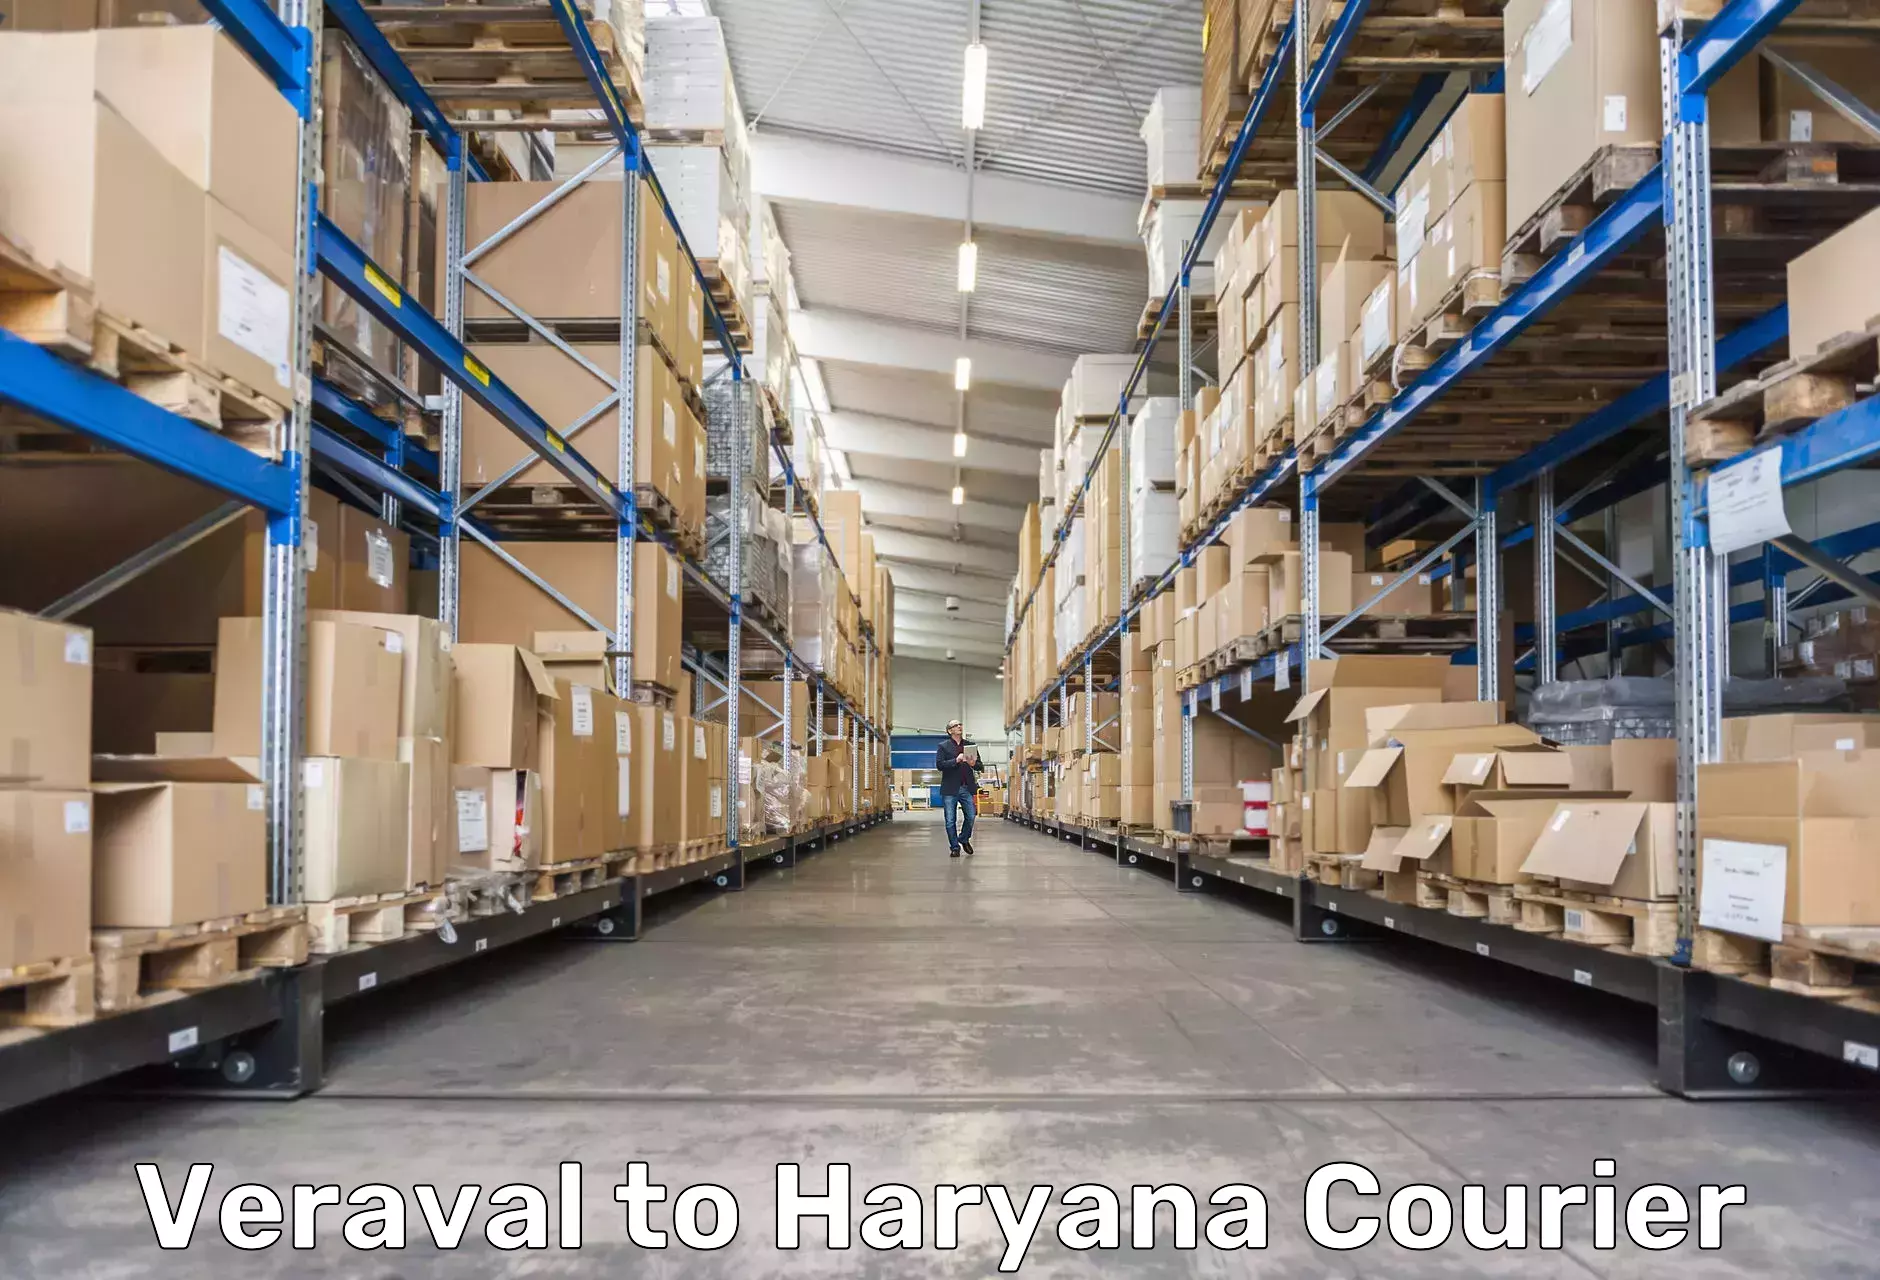 Customer-focused courier Veraval to Rewari